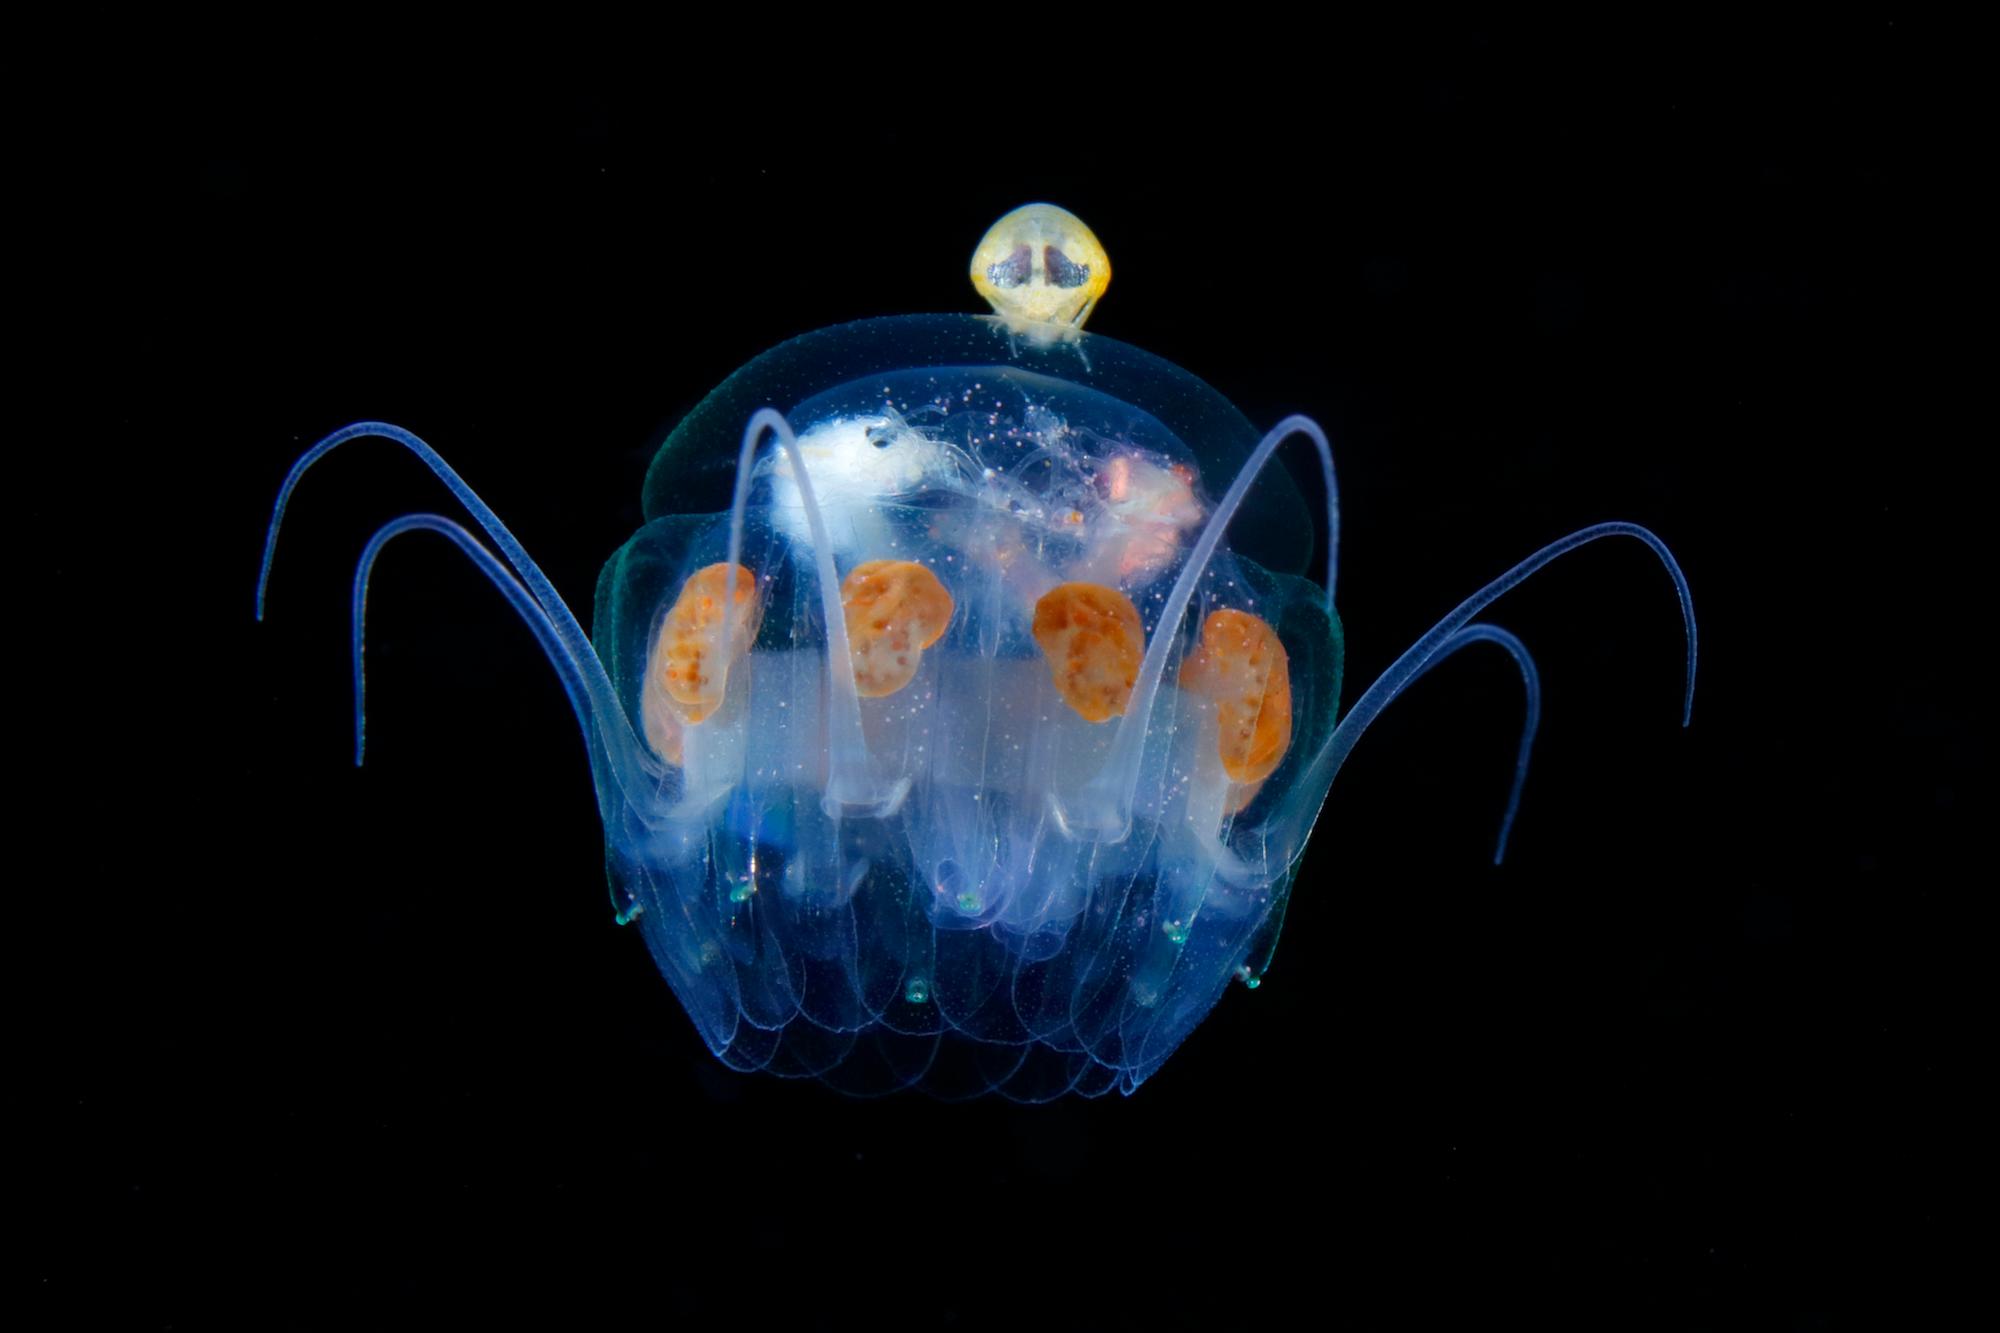 Hyperiidea montando la medusa. Es como un extraterrestre maniobrando una nave espacial/Medusa con forma de paraguas de 20mm de ancho